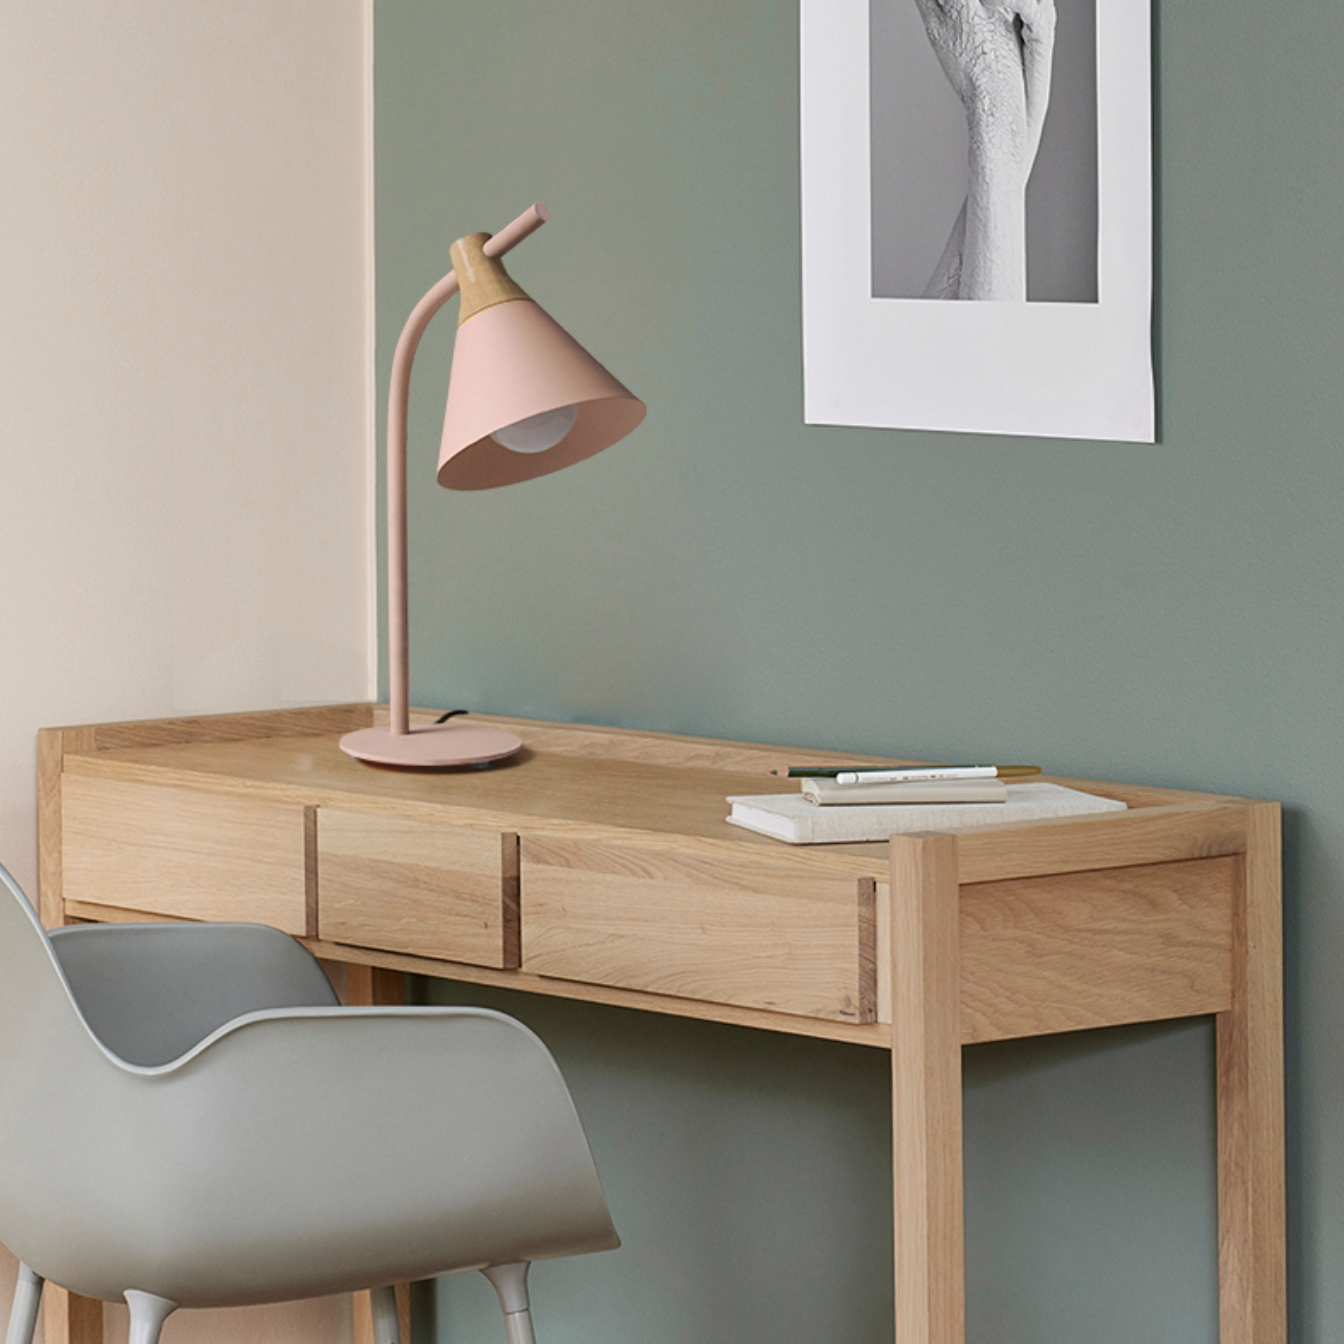 Wood and metal coloured LED desk or bedside lamp